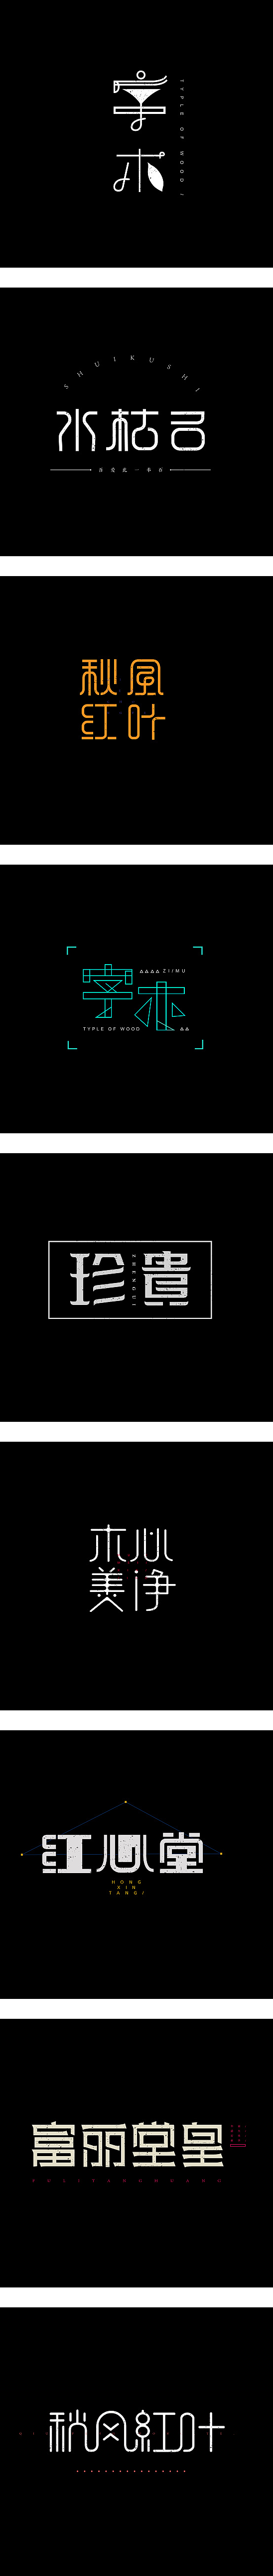 02基础字形|wang海文 #字体#